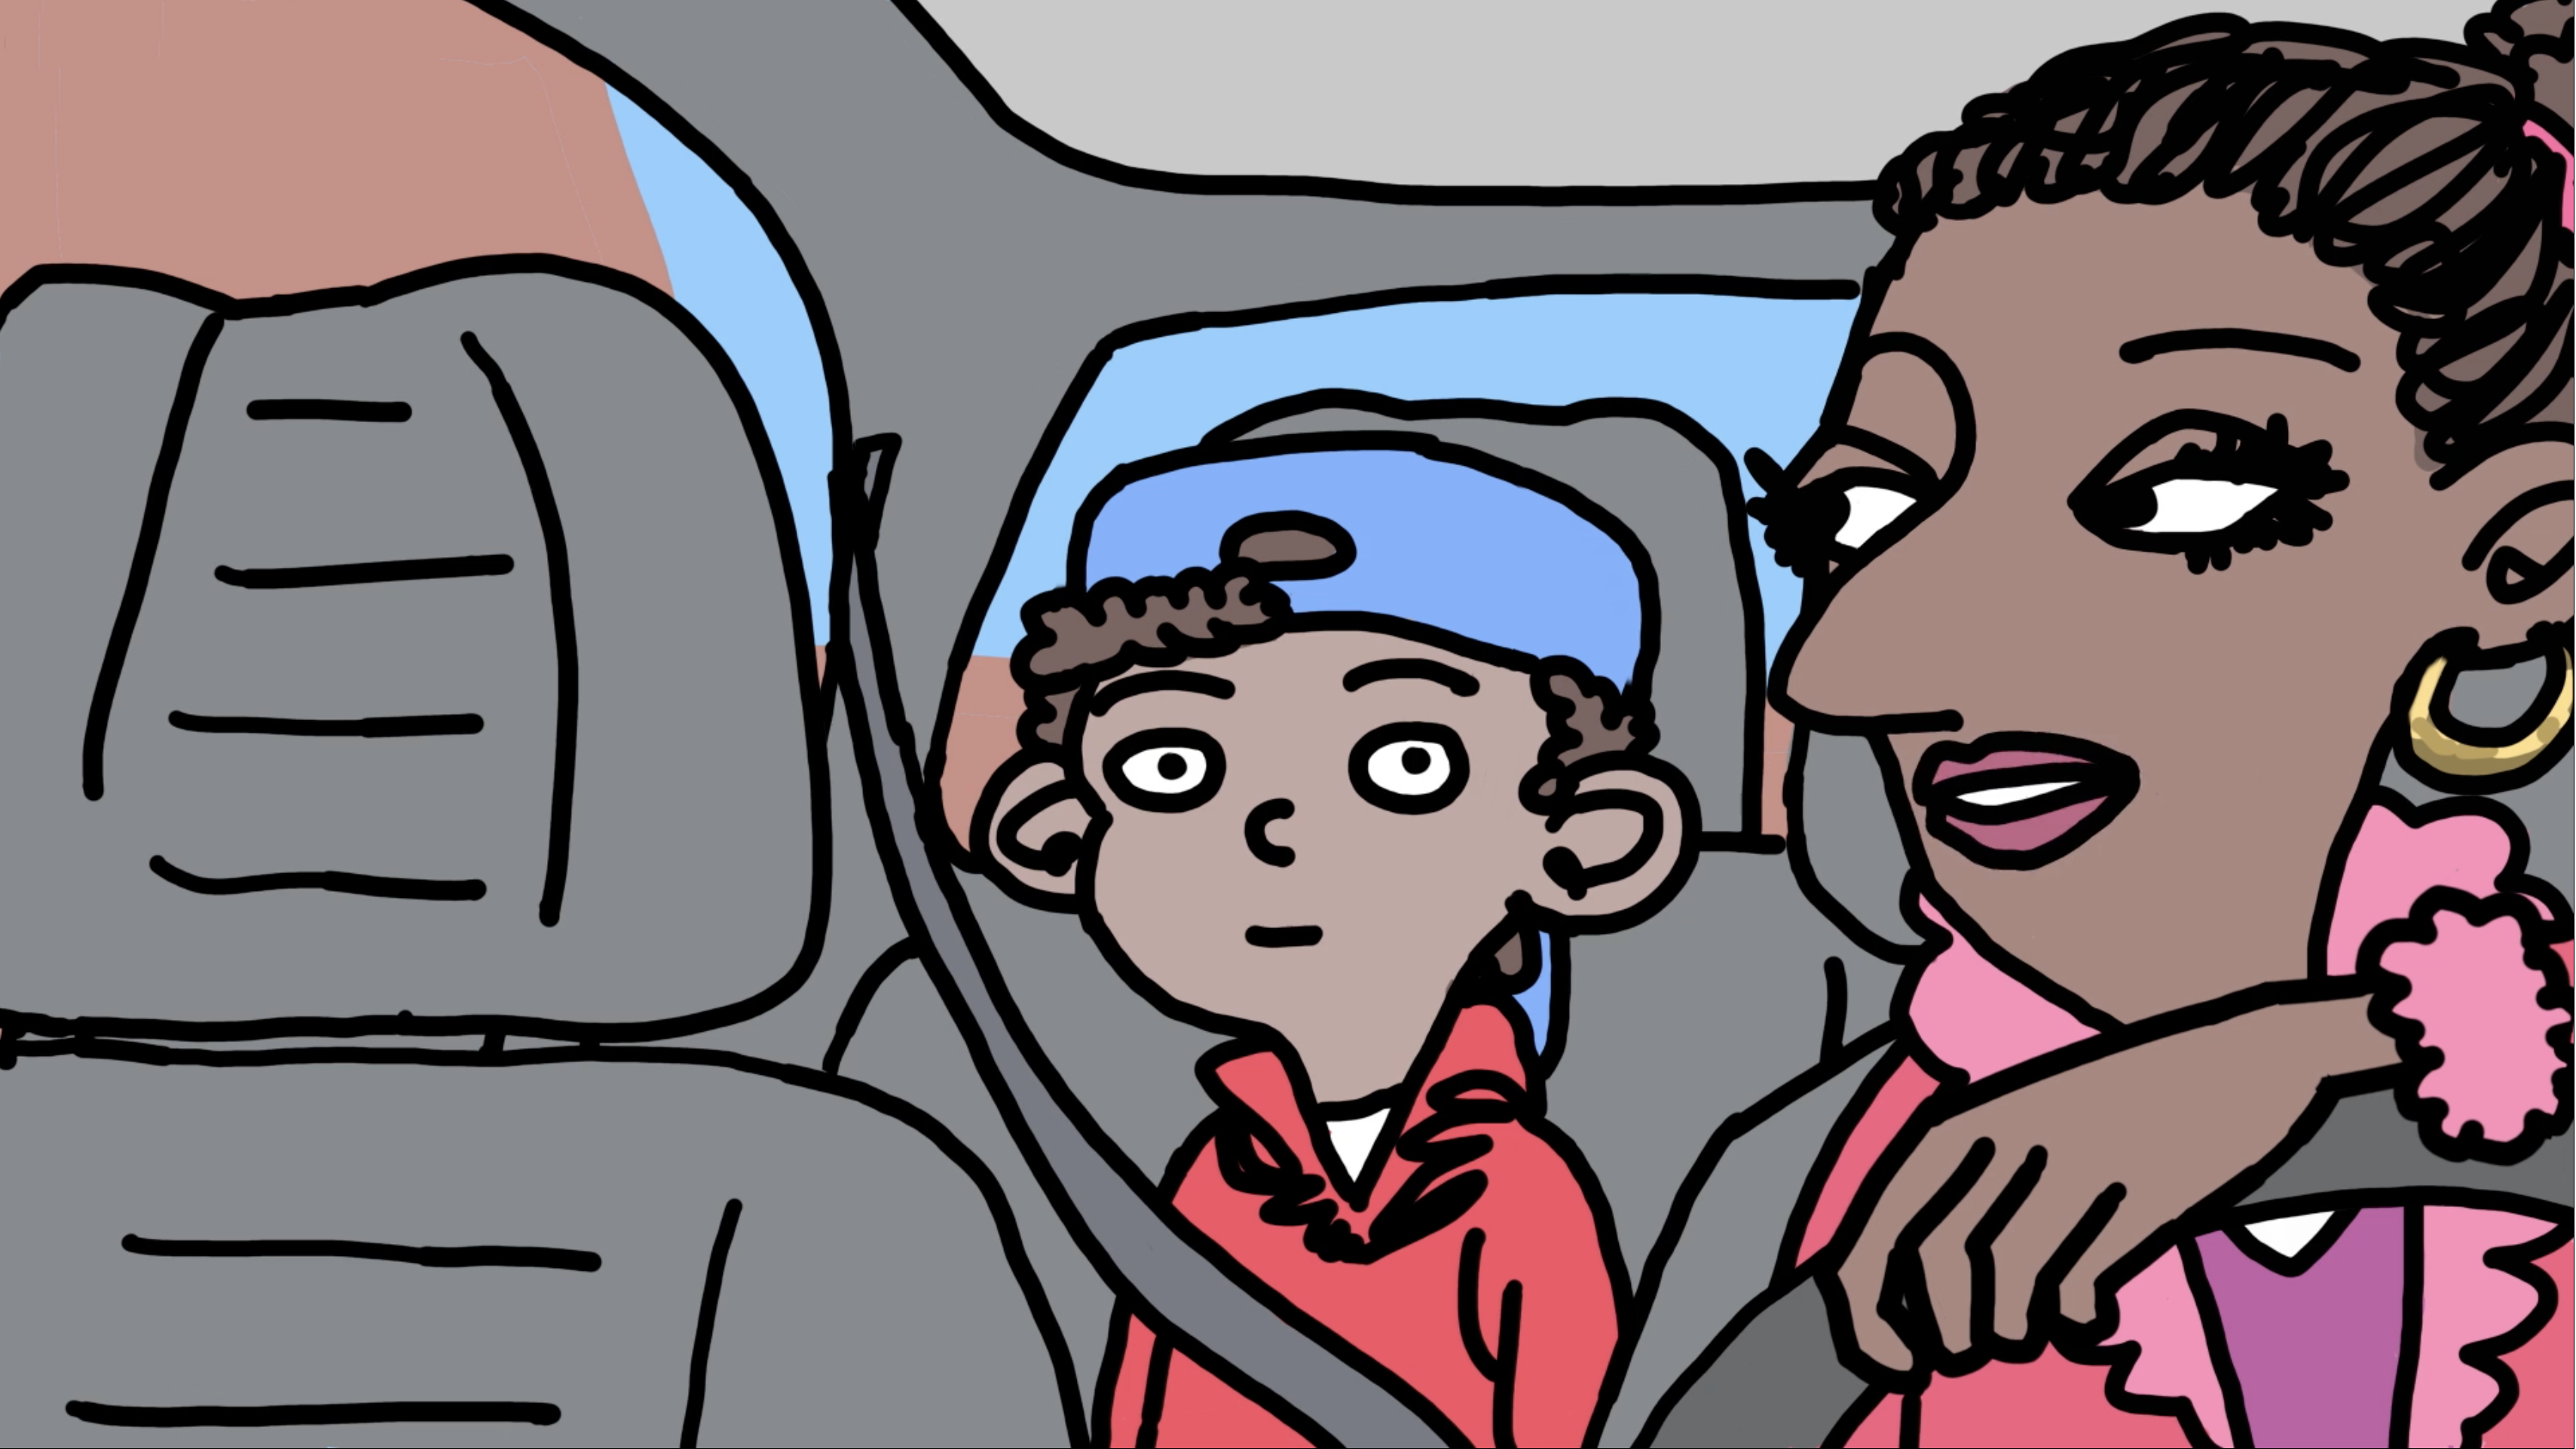 Tecknad bild på en mamma i framsätet på en bil och en pojke i baksätet.